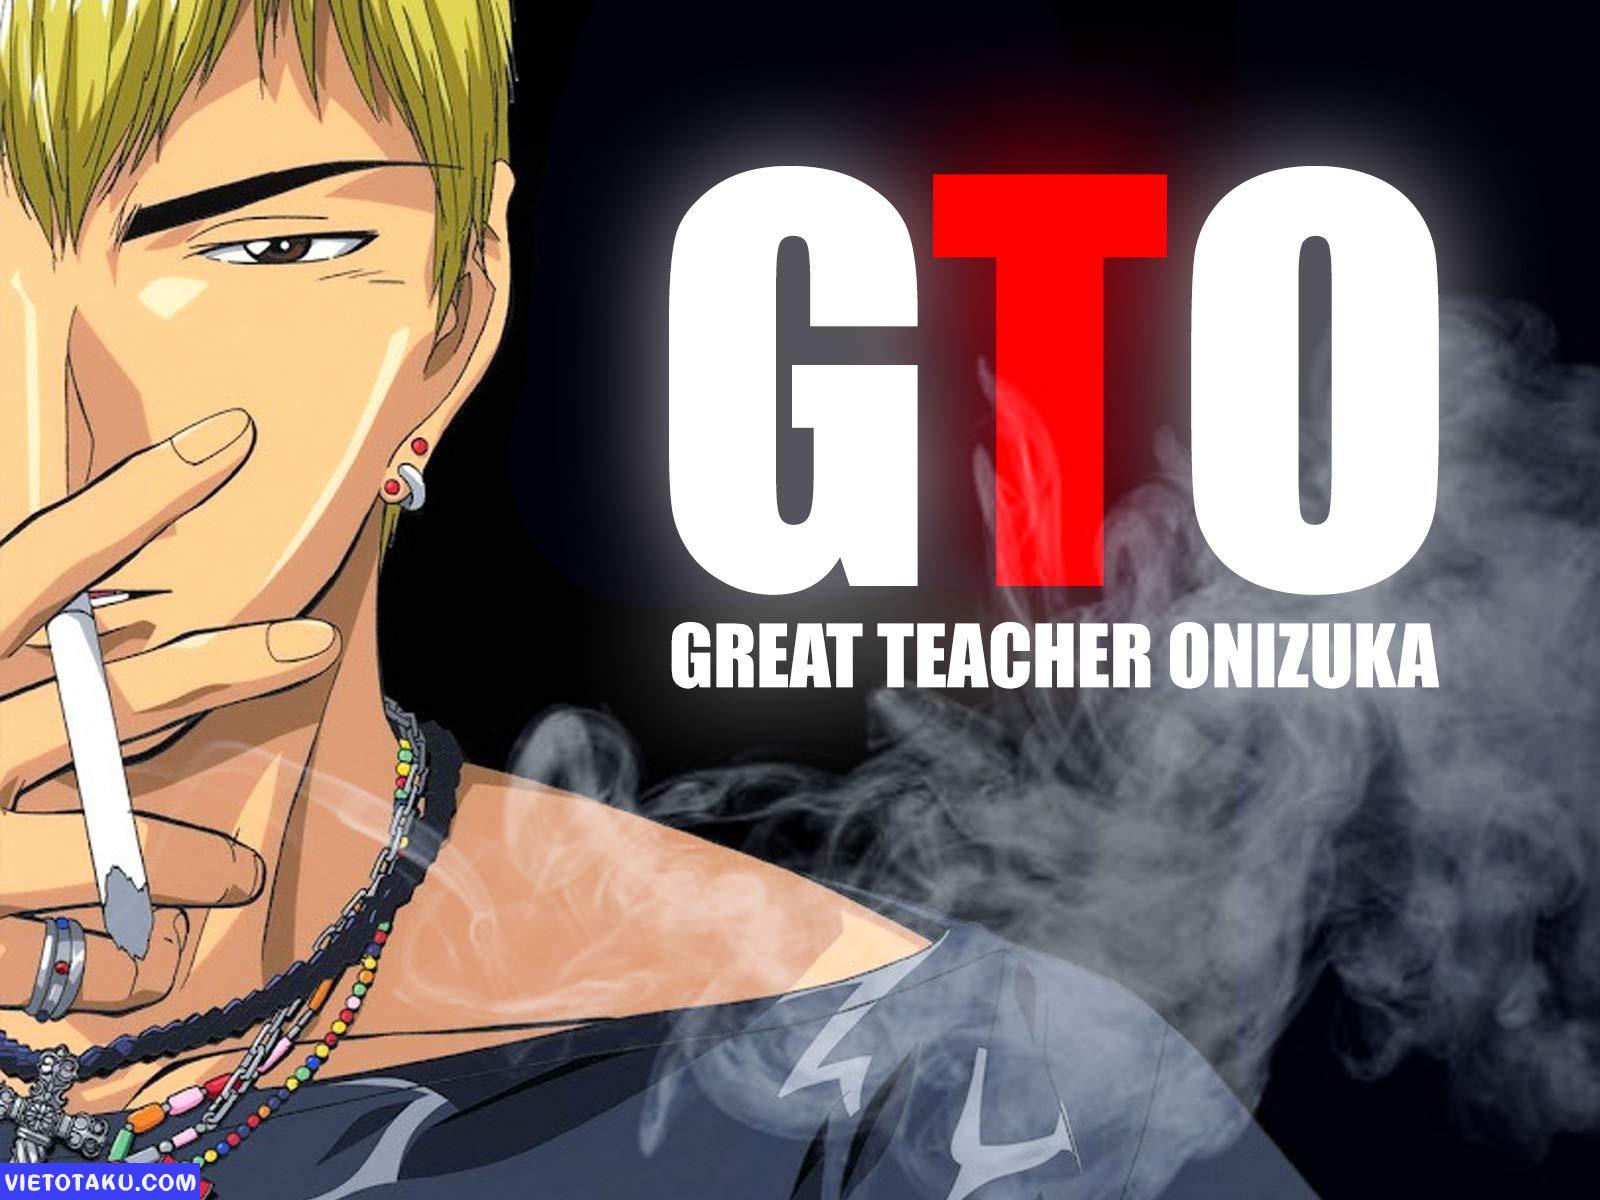 Onizuka Eikichi/#1096580 | Great teacher onizuka, Trafalgar law wallpapers,  Anime images